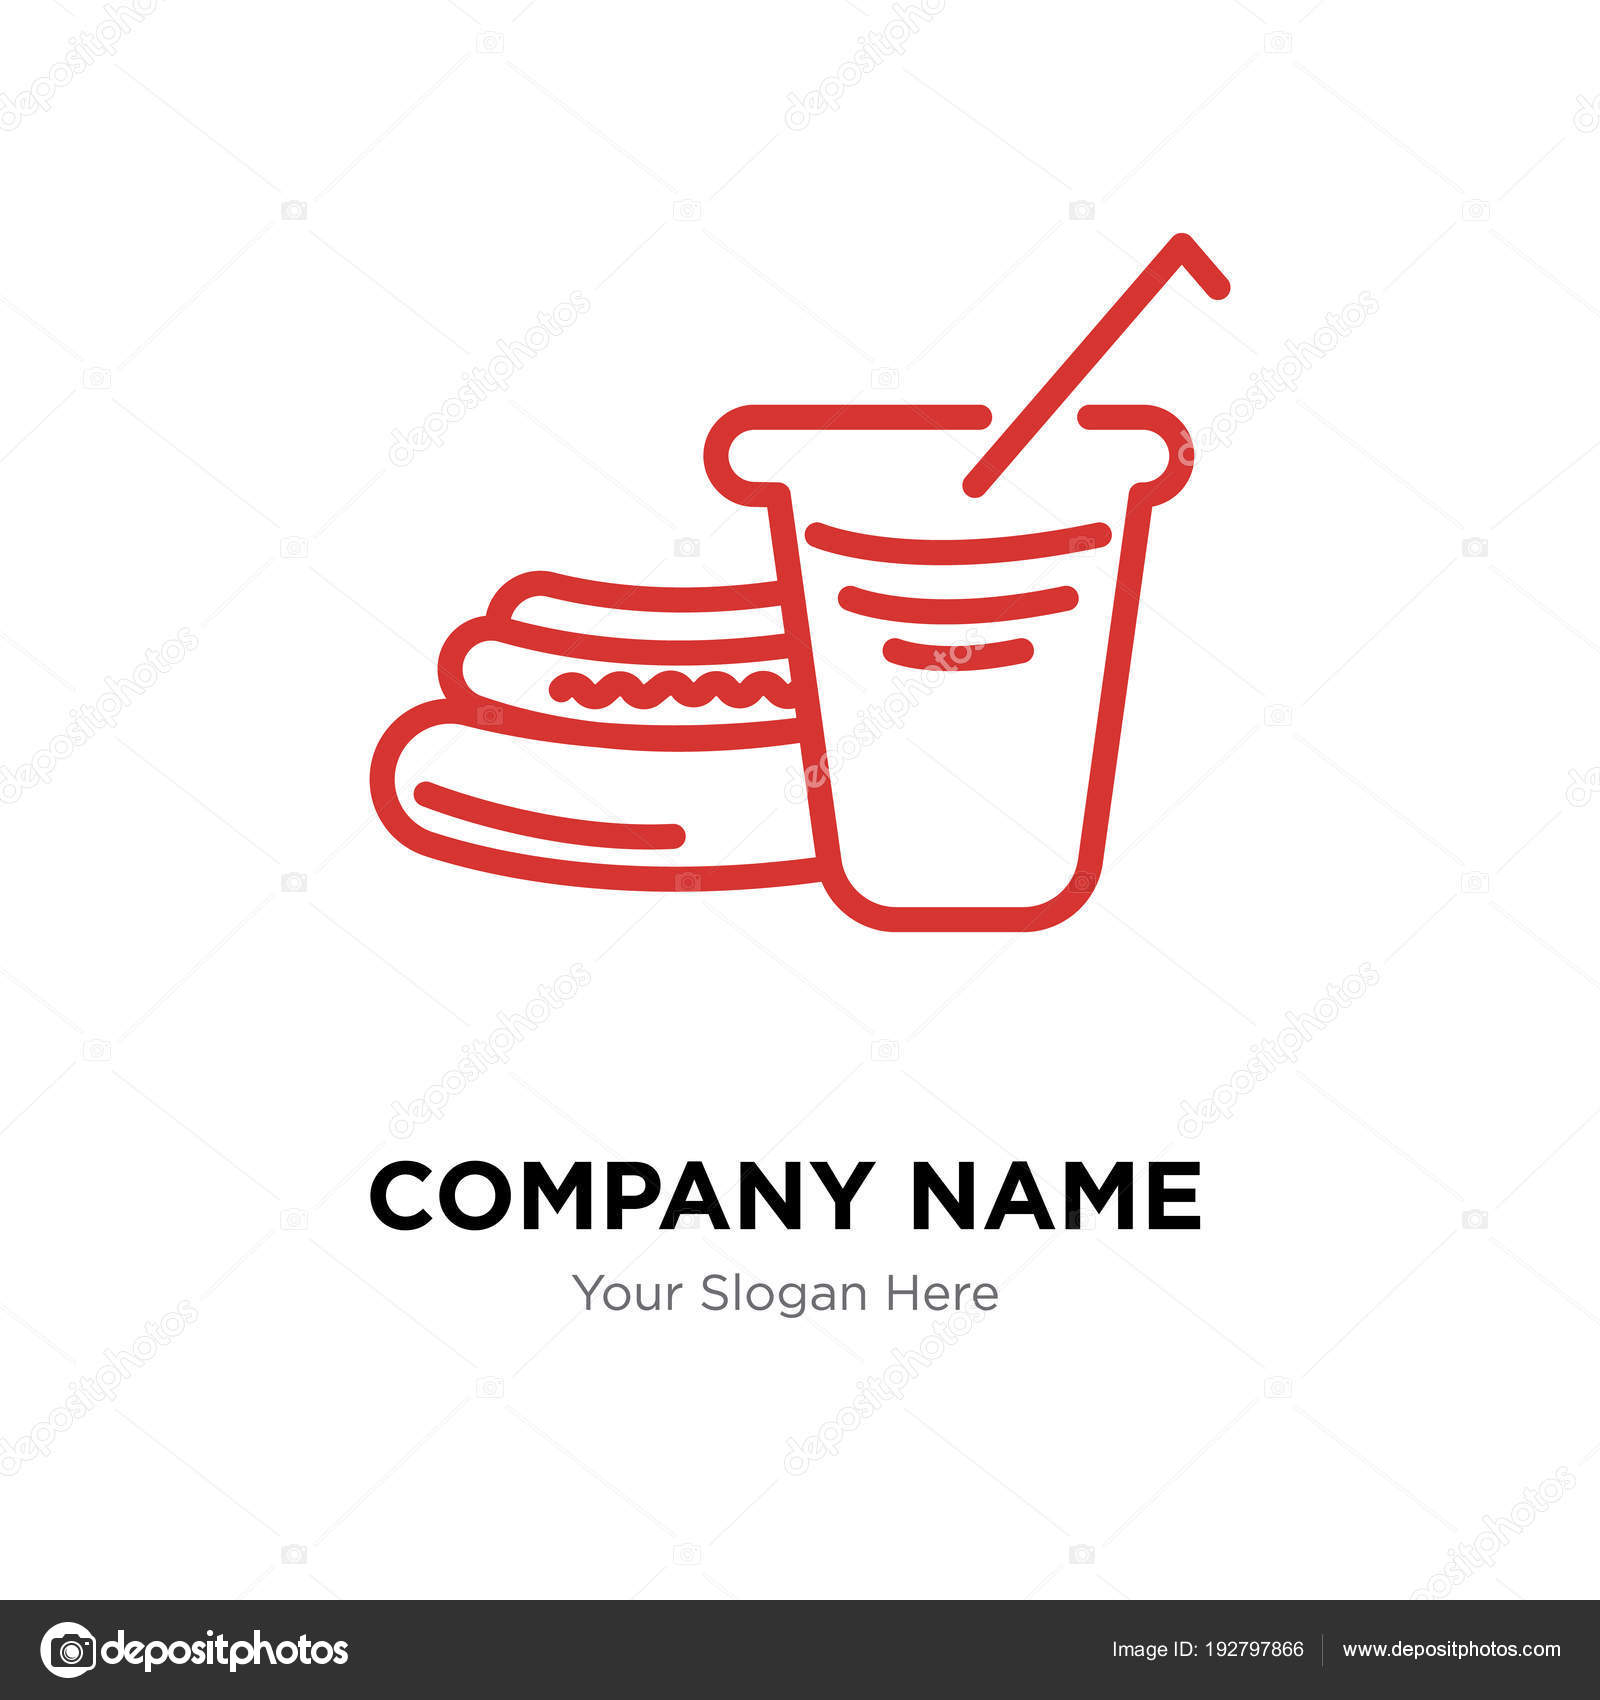 Hot Dog Company Logo Design Template Stock Vector